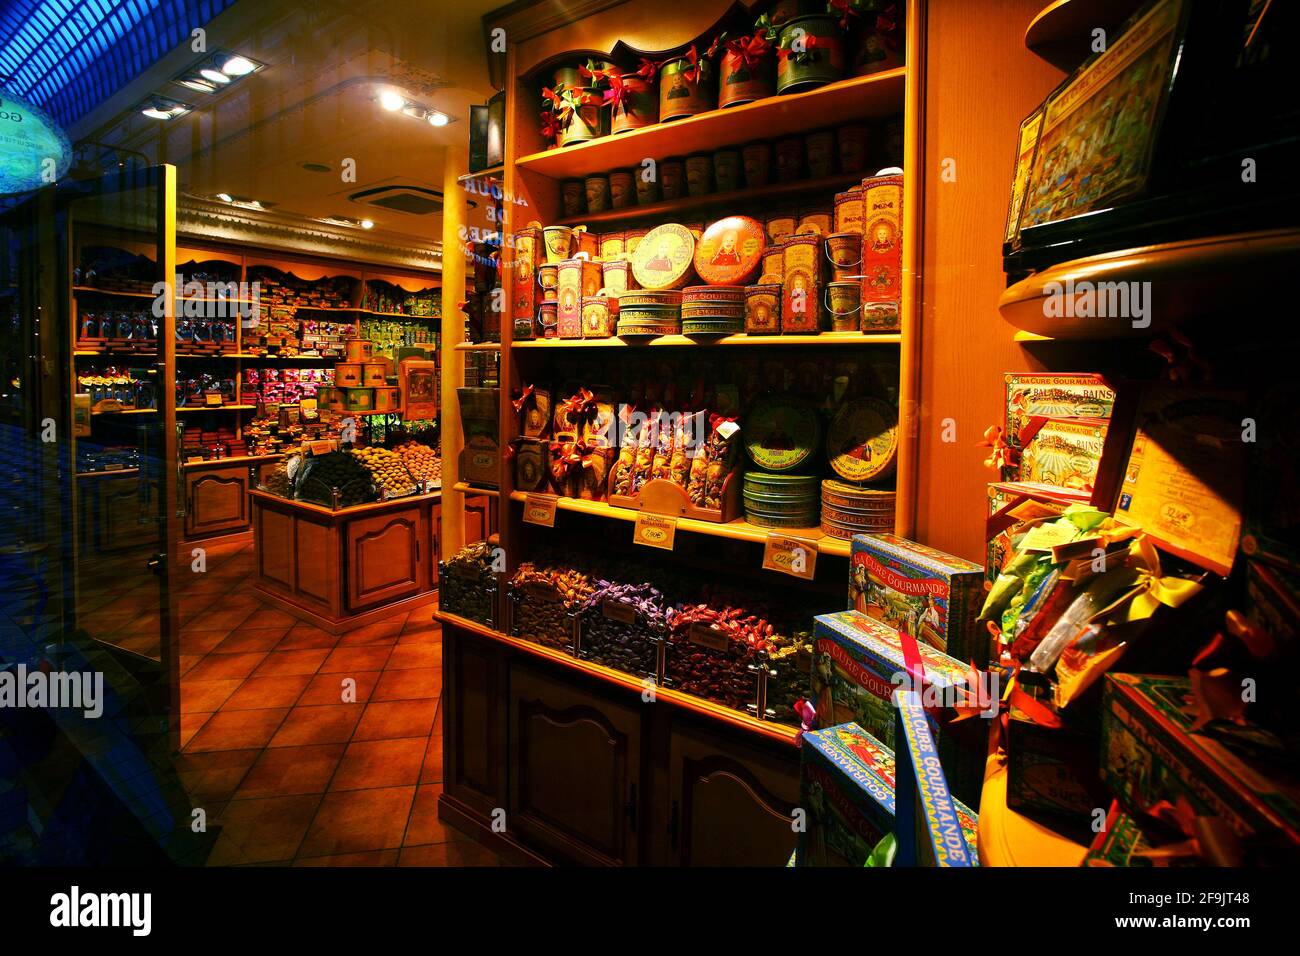 Einkaufstour in einem nostalgischen Ladengeschäft mit süßen Leckereien, Bonbons und pralinés als Geschenk oder zum sofortigen vernaschen. Stock Photo